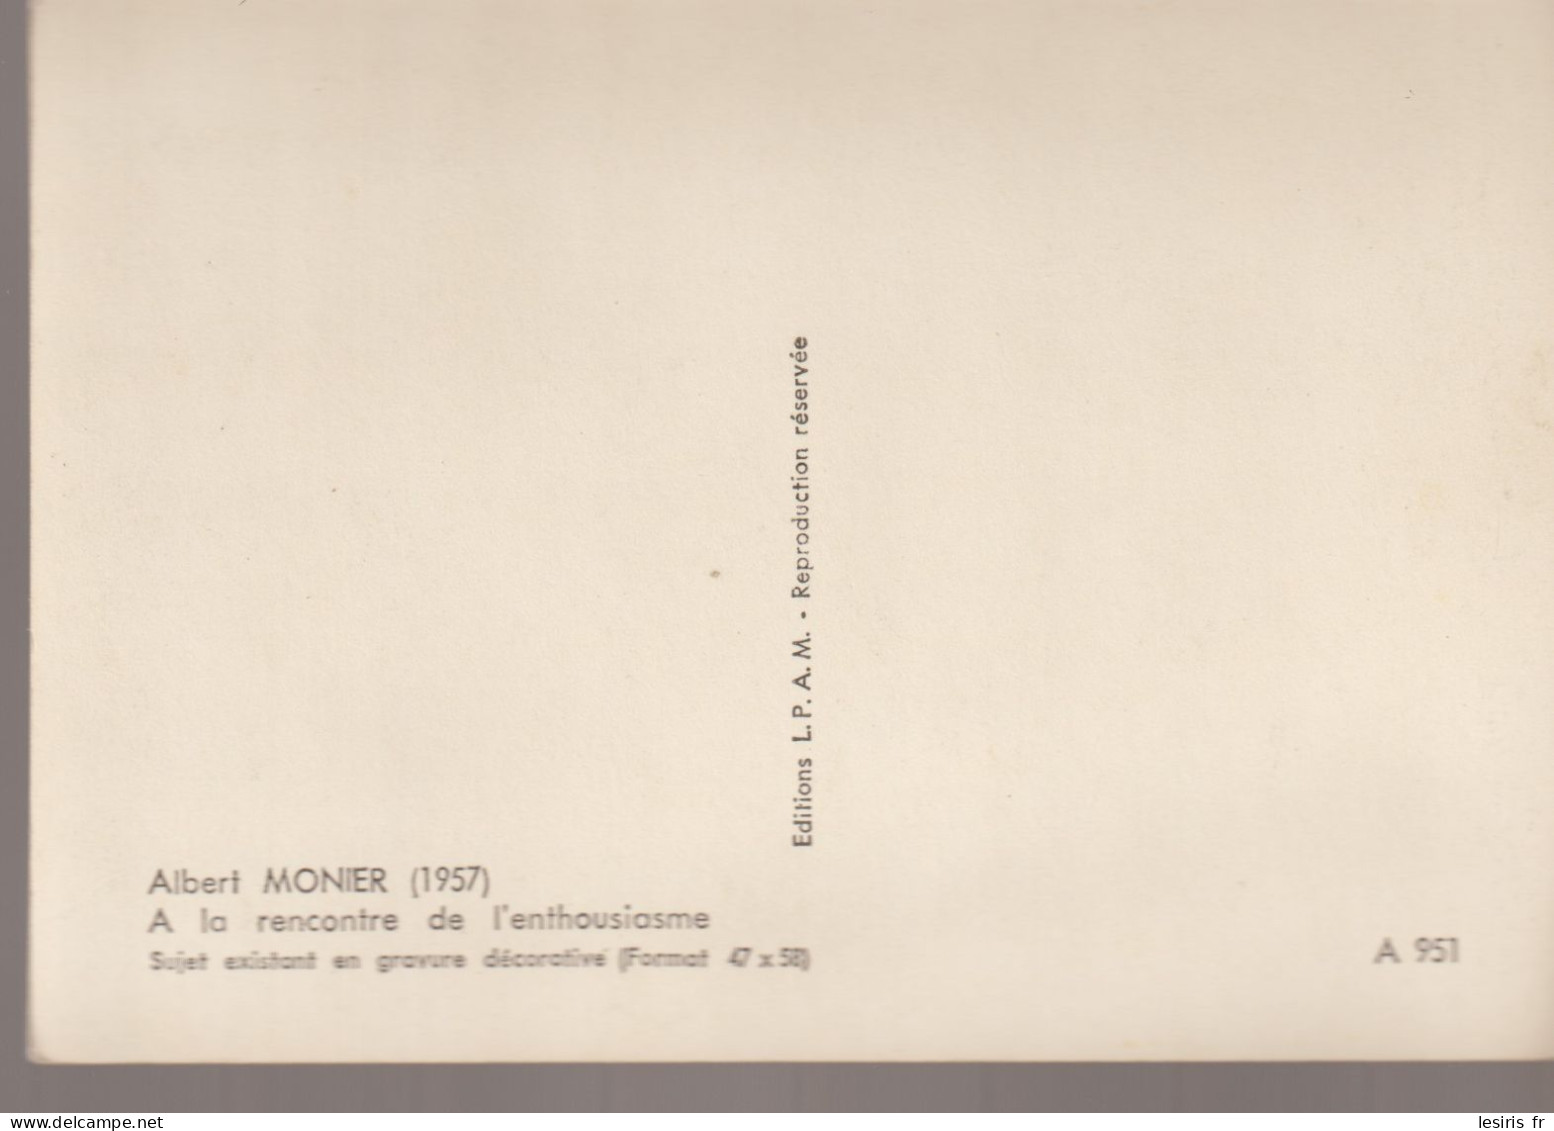 C.P. - PHOTO - ALBERT MONIER - A LA RENCONTRE DE L'ENTHOUSIASME - L.P.A.M. - A 951 - Monier